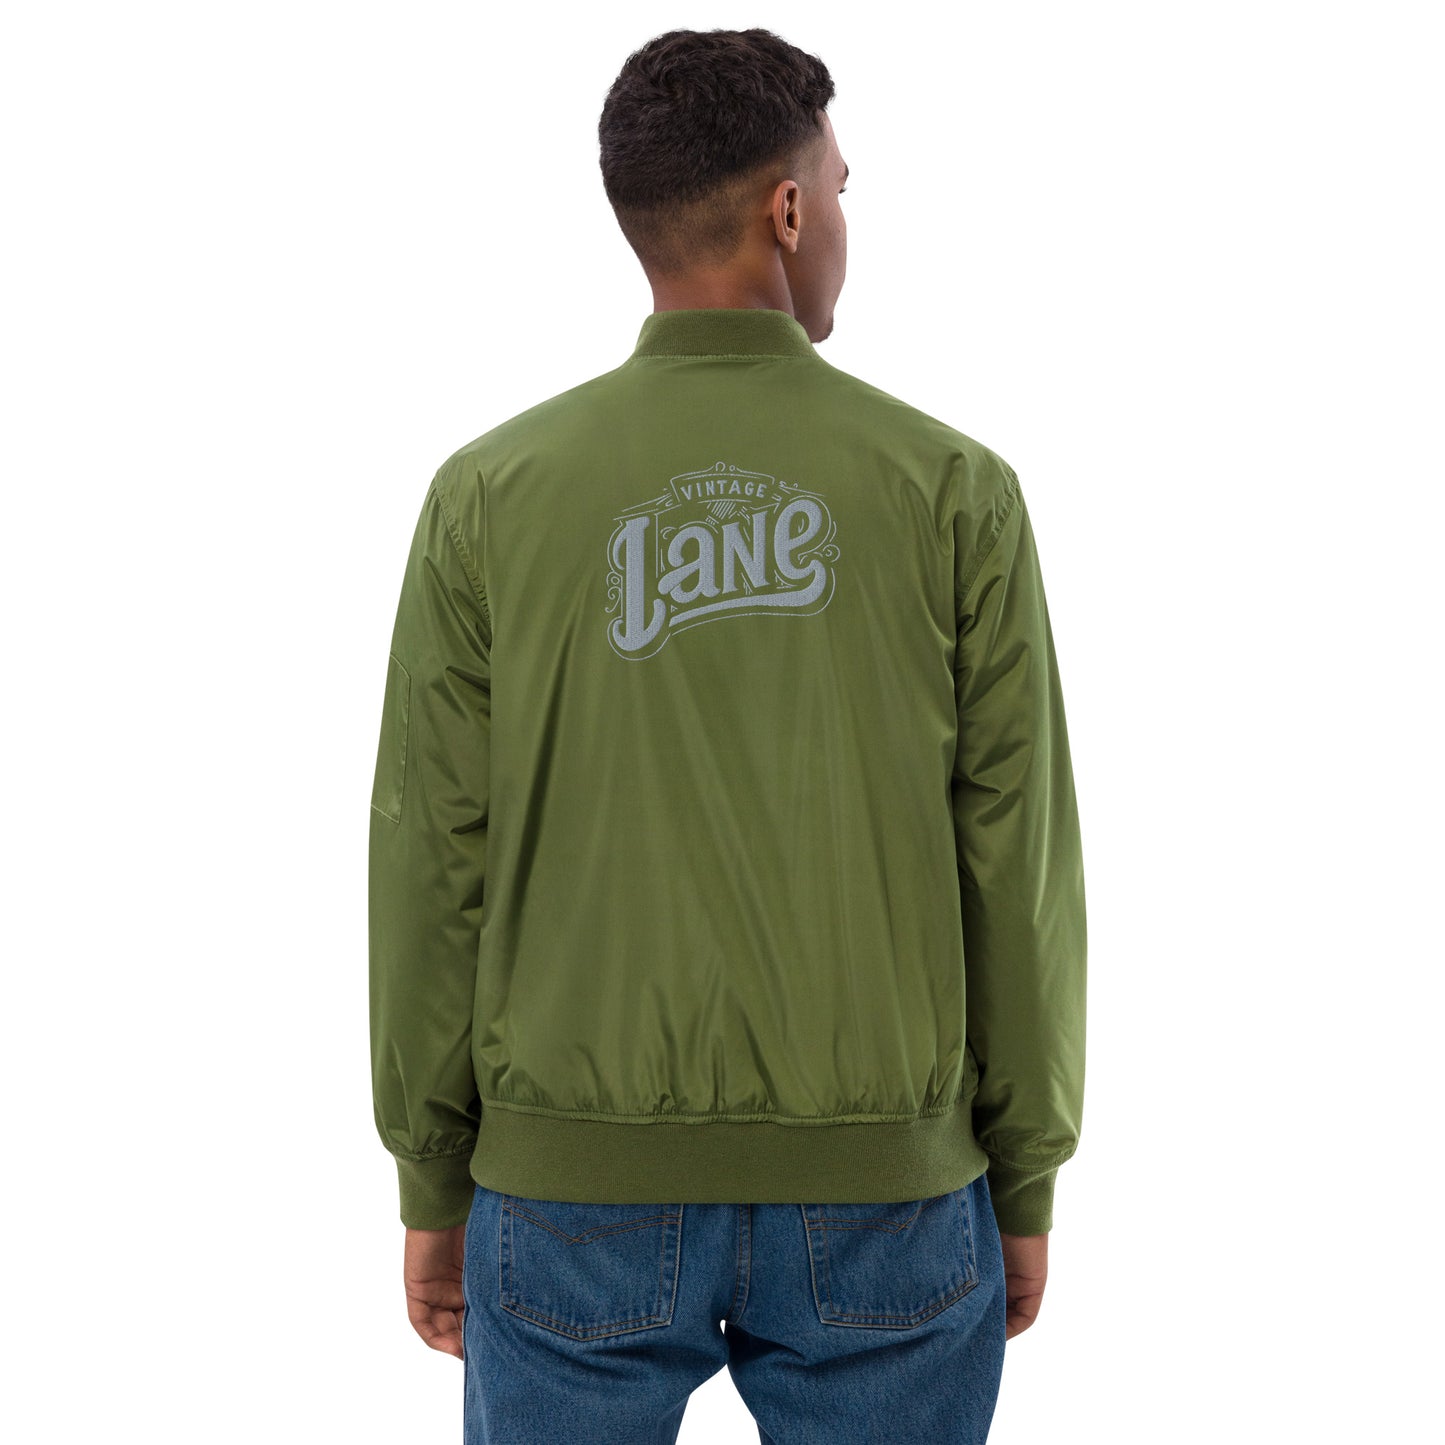 Vintage Lane embroider  bomber jacket